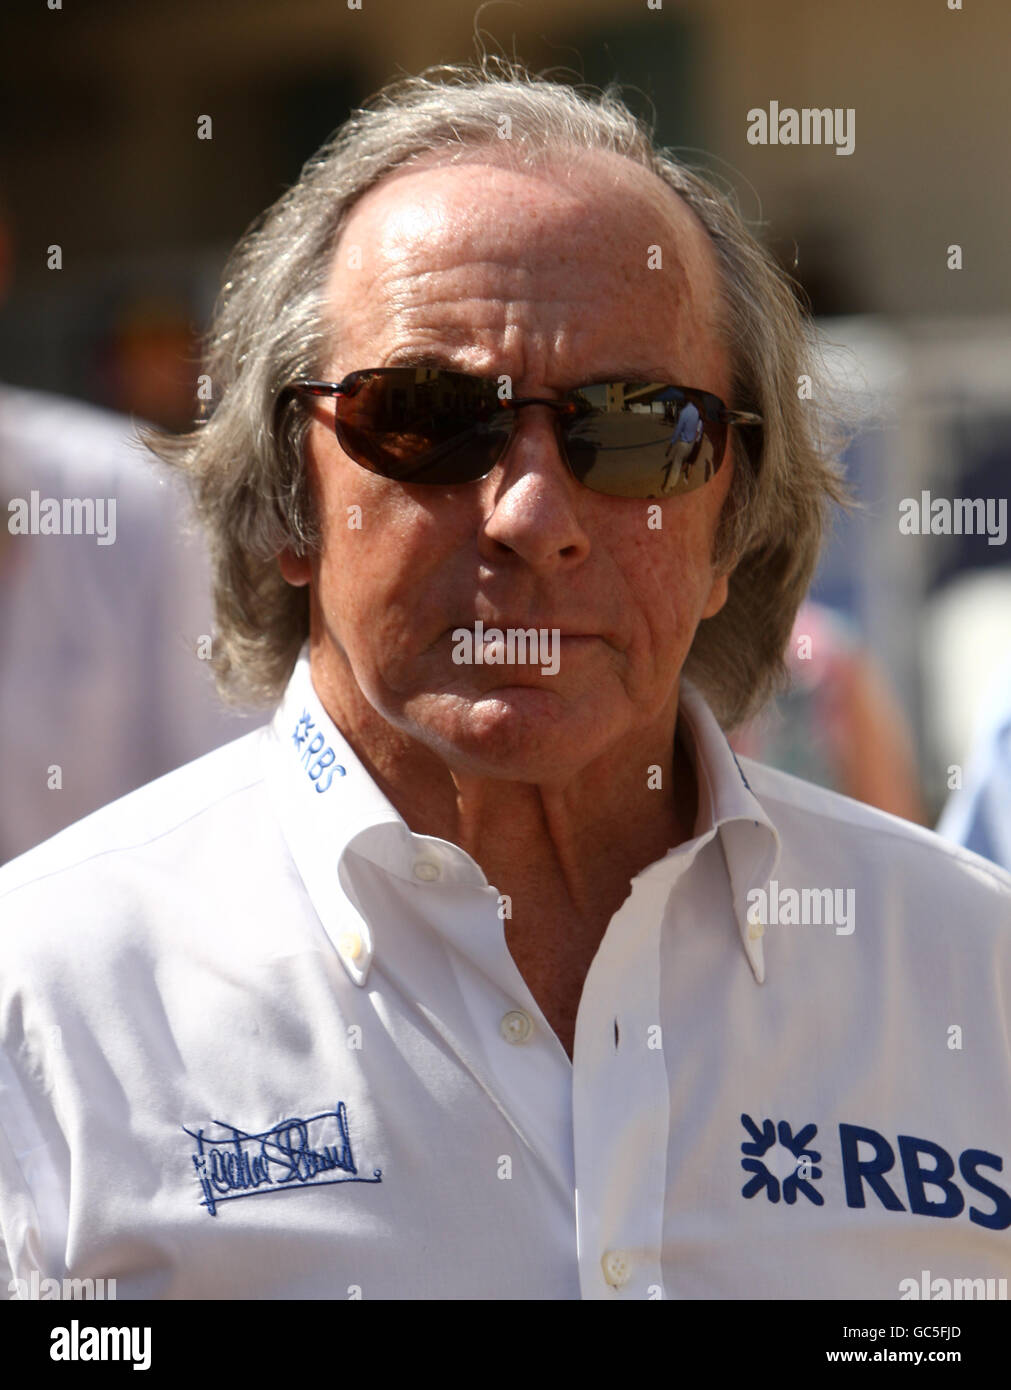 Ehemaliger F1-Pilot Sir Jackie Stewart vor dem Grand Prix von Abu Dhabi. Der Gewinner von drei World Driver's Championships, Stewart gilt als einer der größten Rennfahrer in der Geschichte des Formel-1-Rennens. Stockfoto